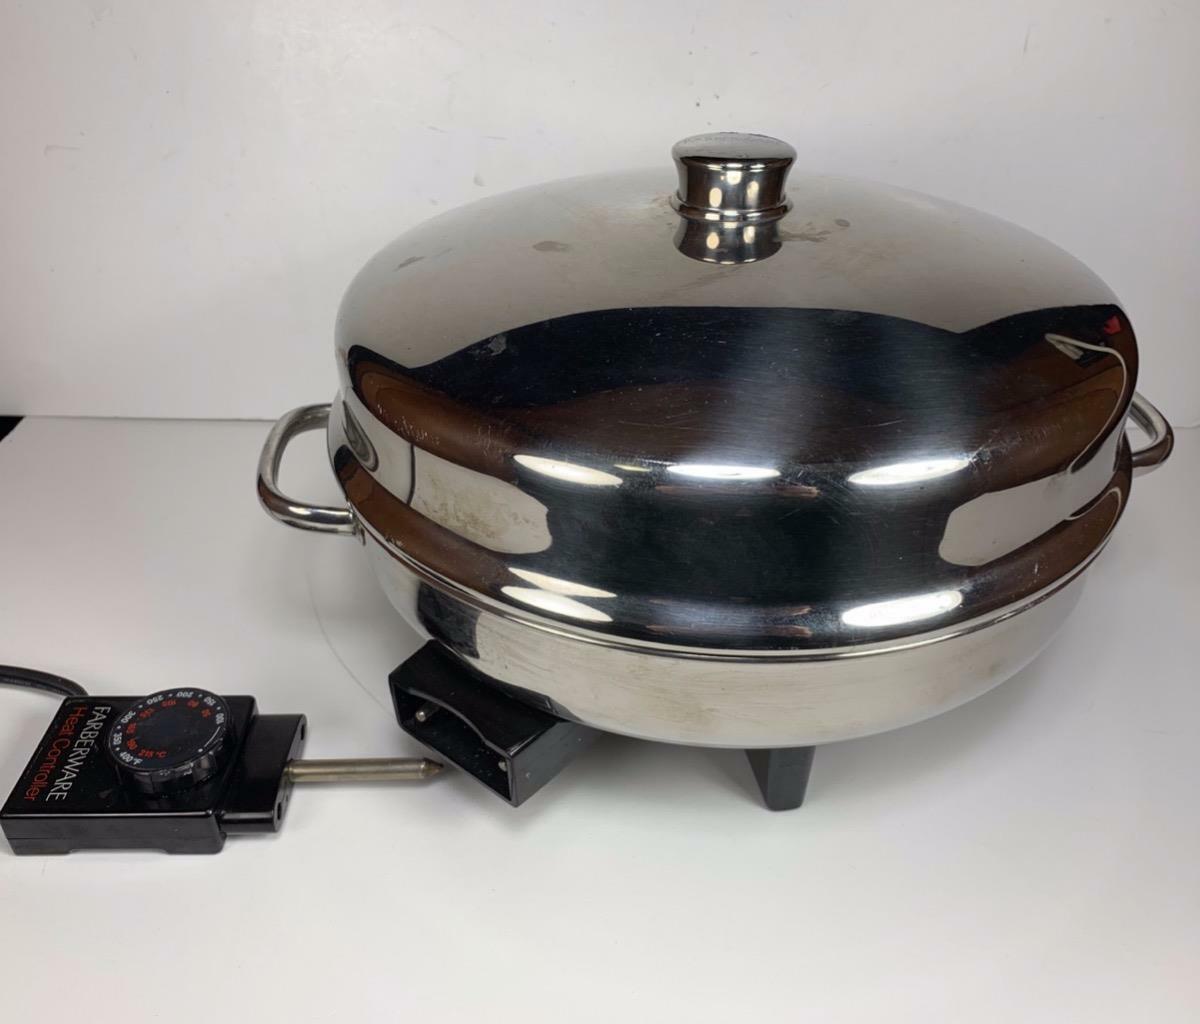 12" Farberware Electric 1650W Skillet Fry Pan Dome Lid Stainless Steel Farberware Stainless Steel Frying Pan